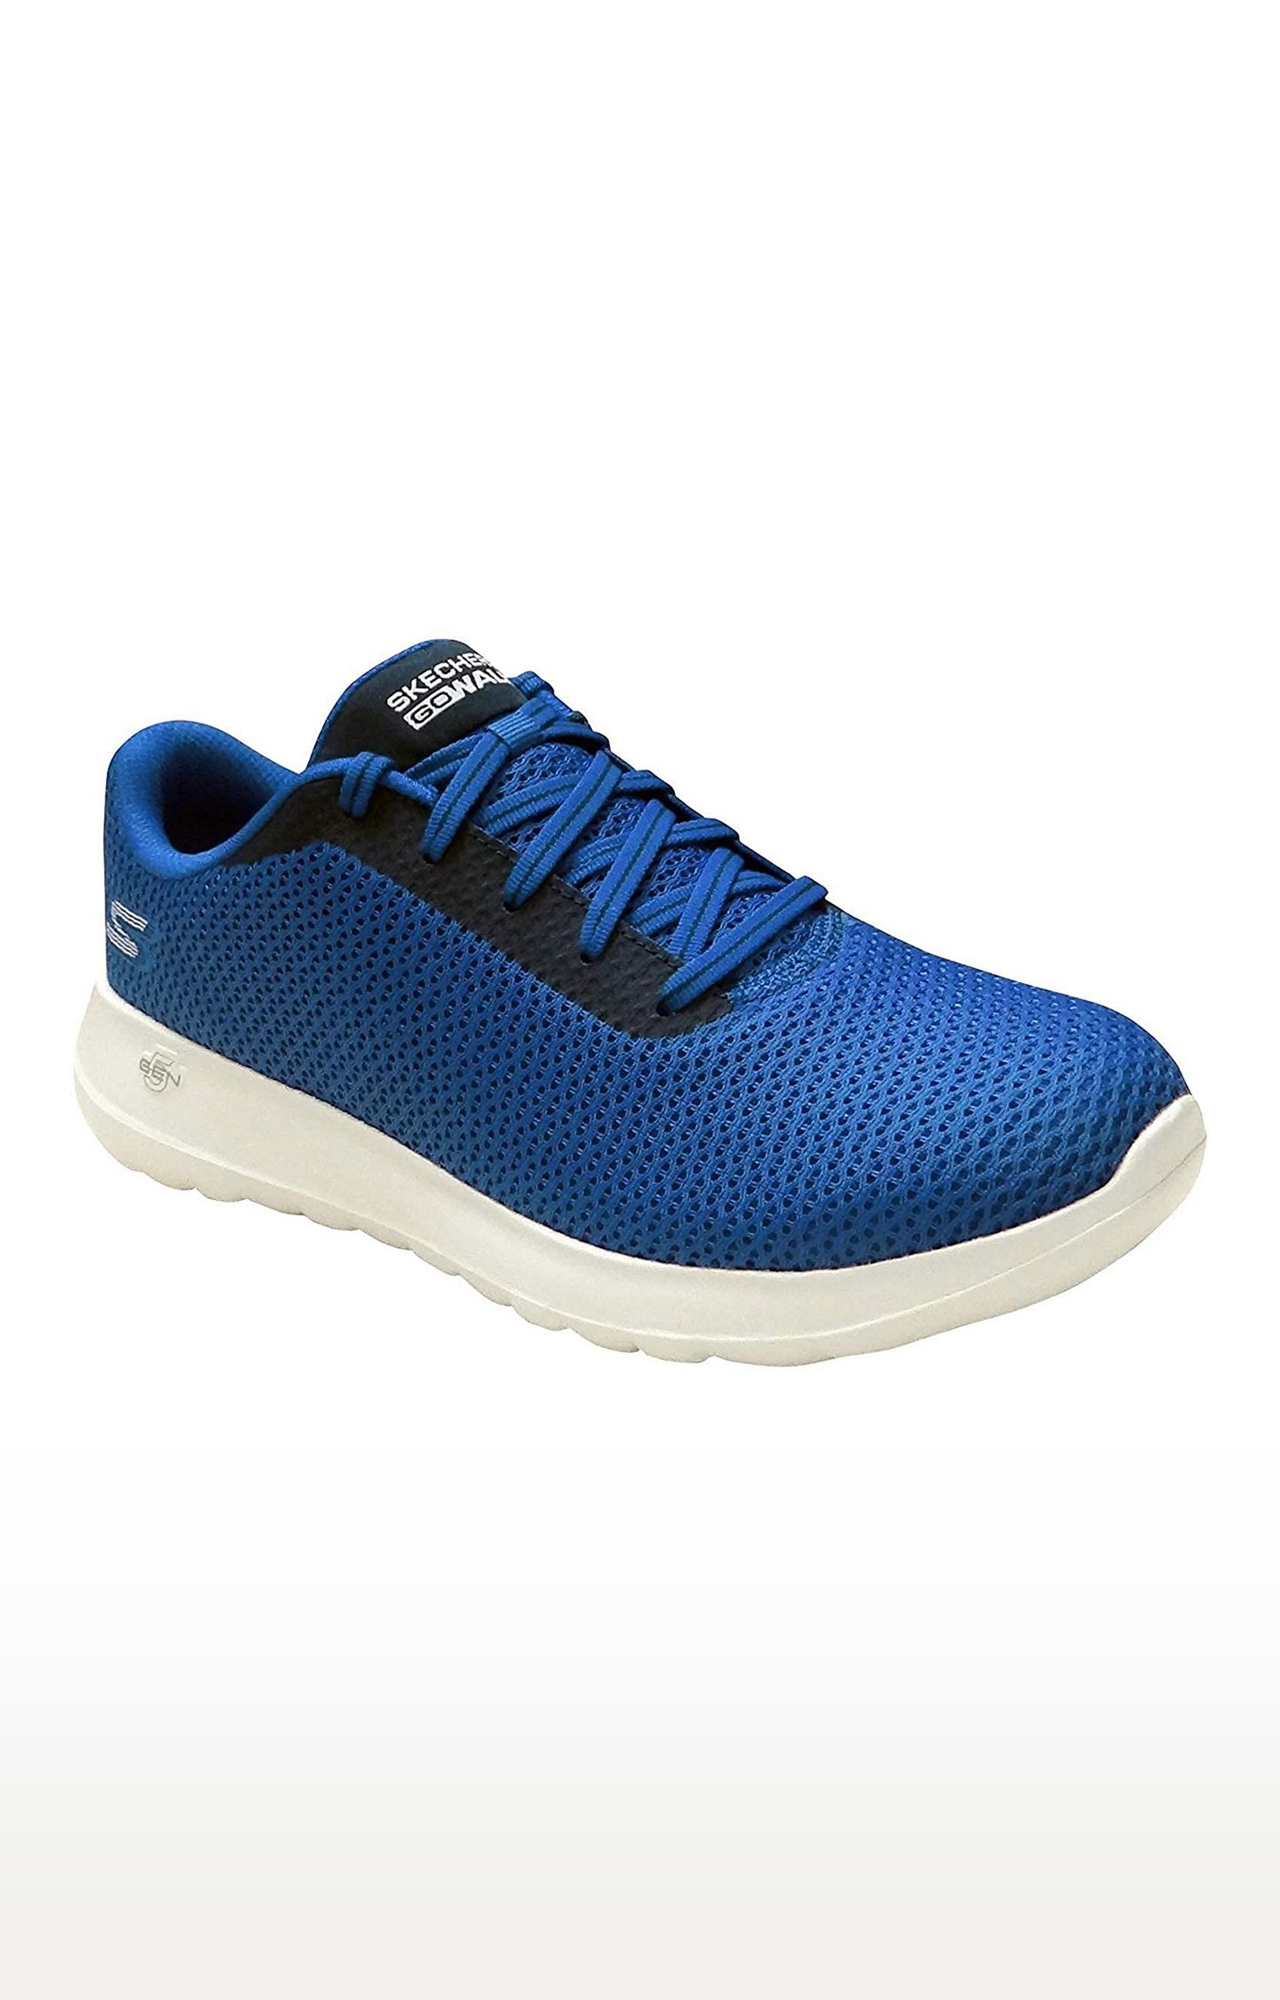 Skechers | Skechers Men's Go Walk Max-Effort Blue/Black/White Running Shoes